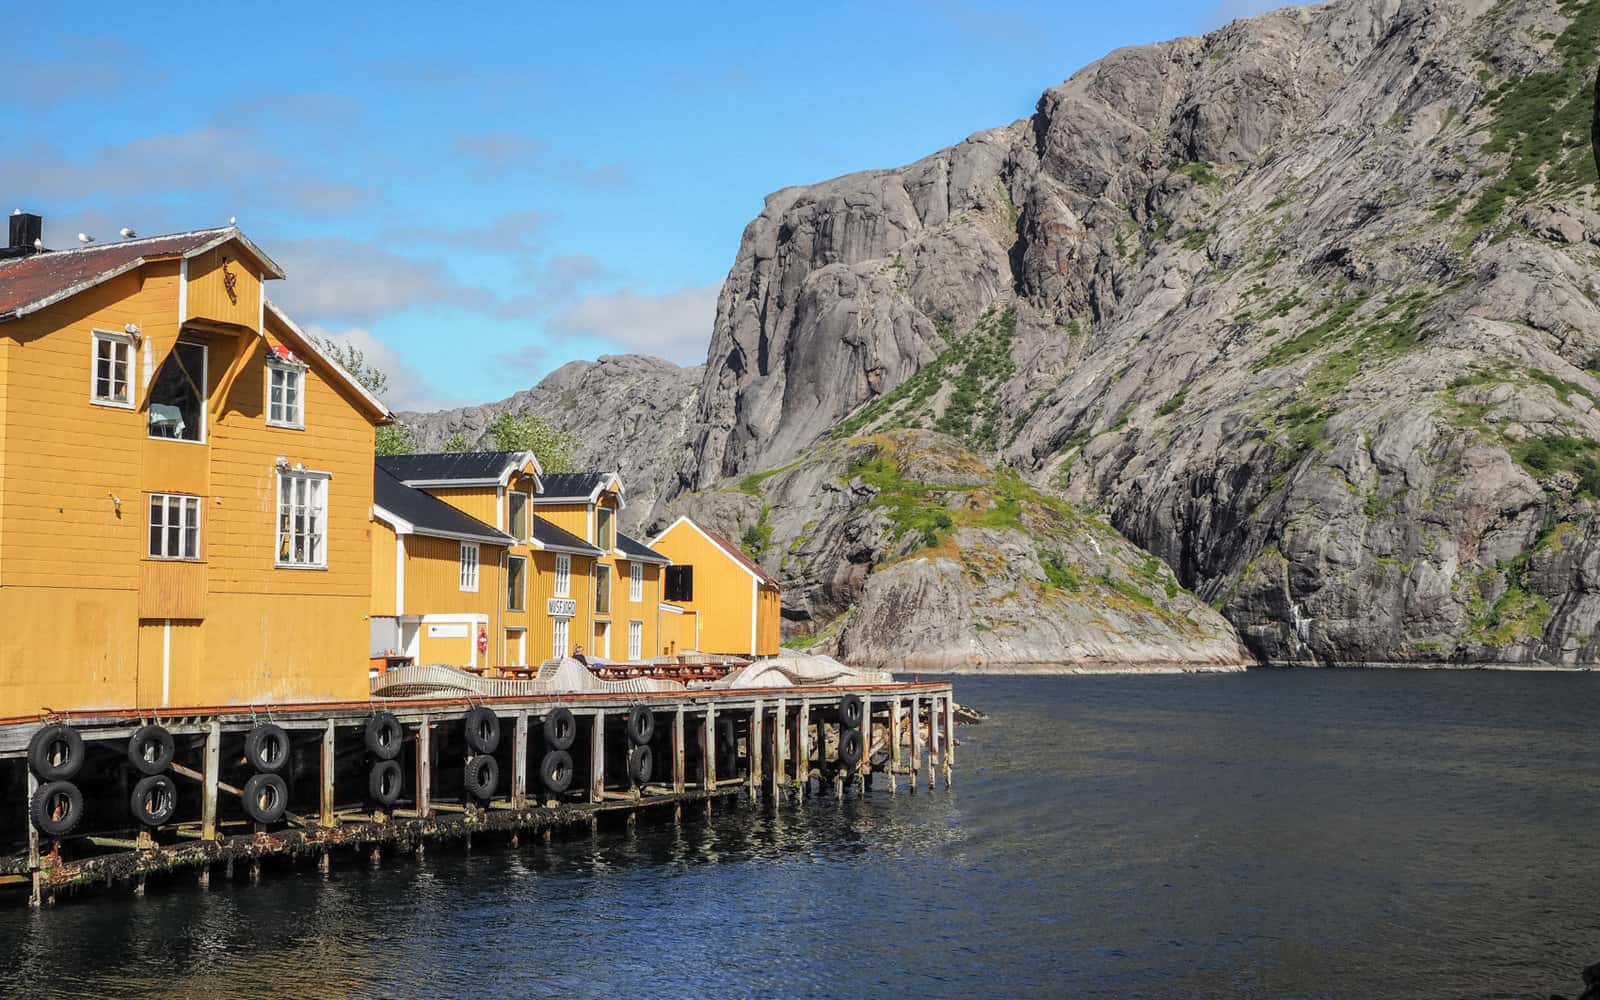 plus beau villages Lofoten, Nusfjord